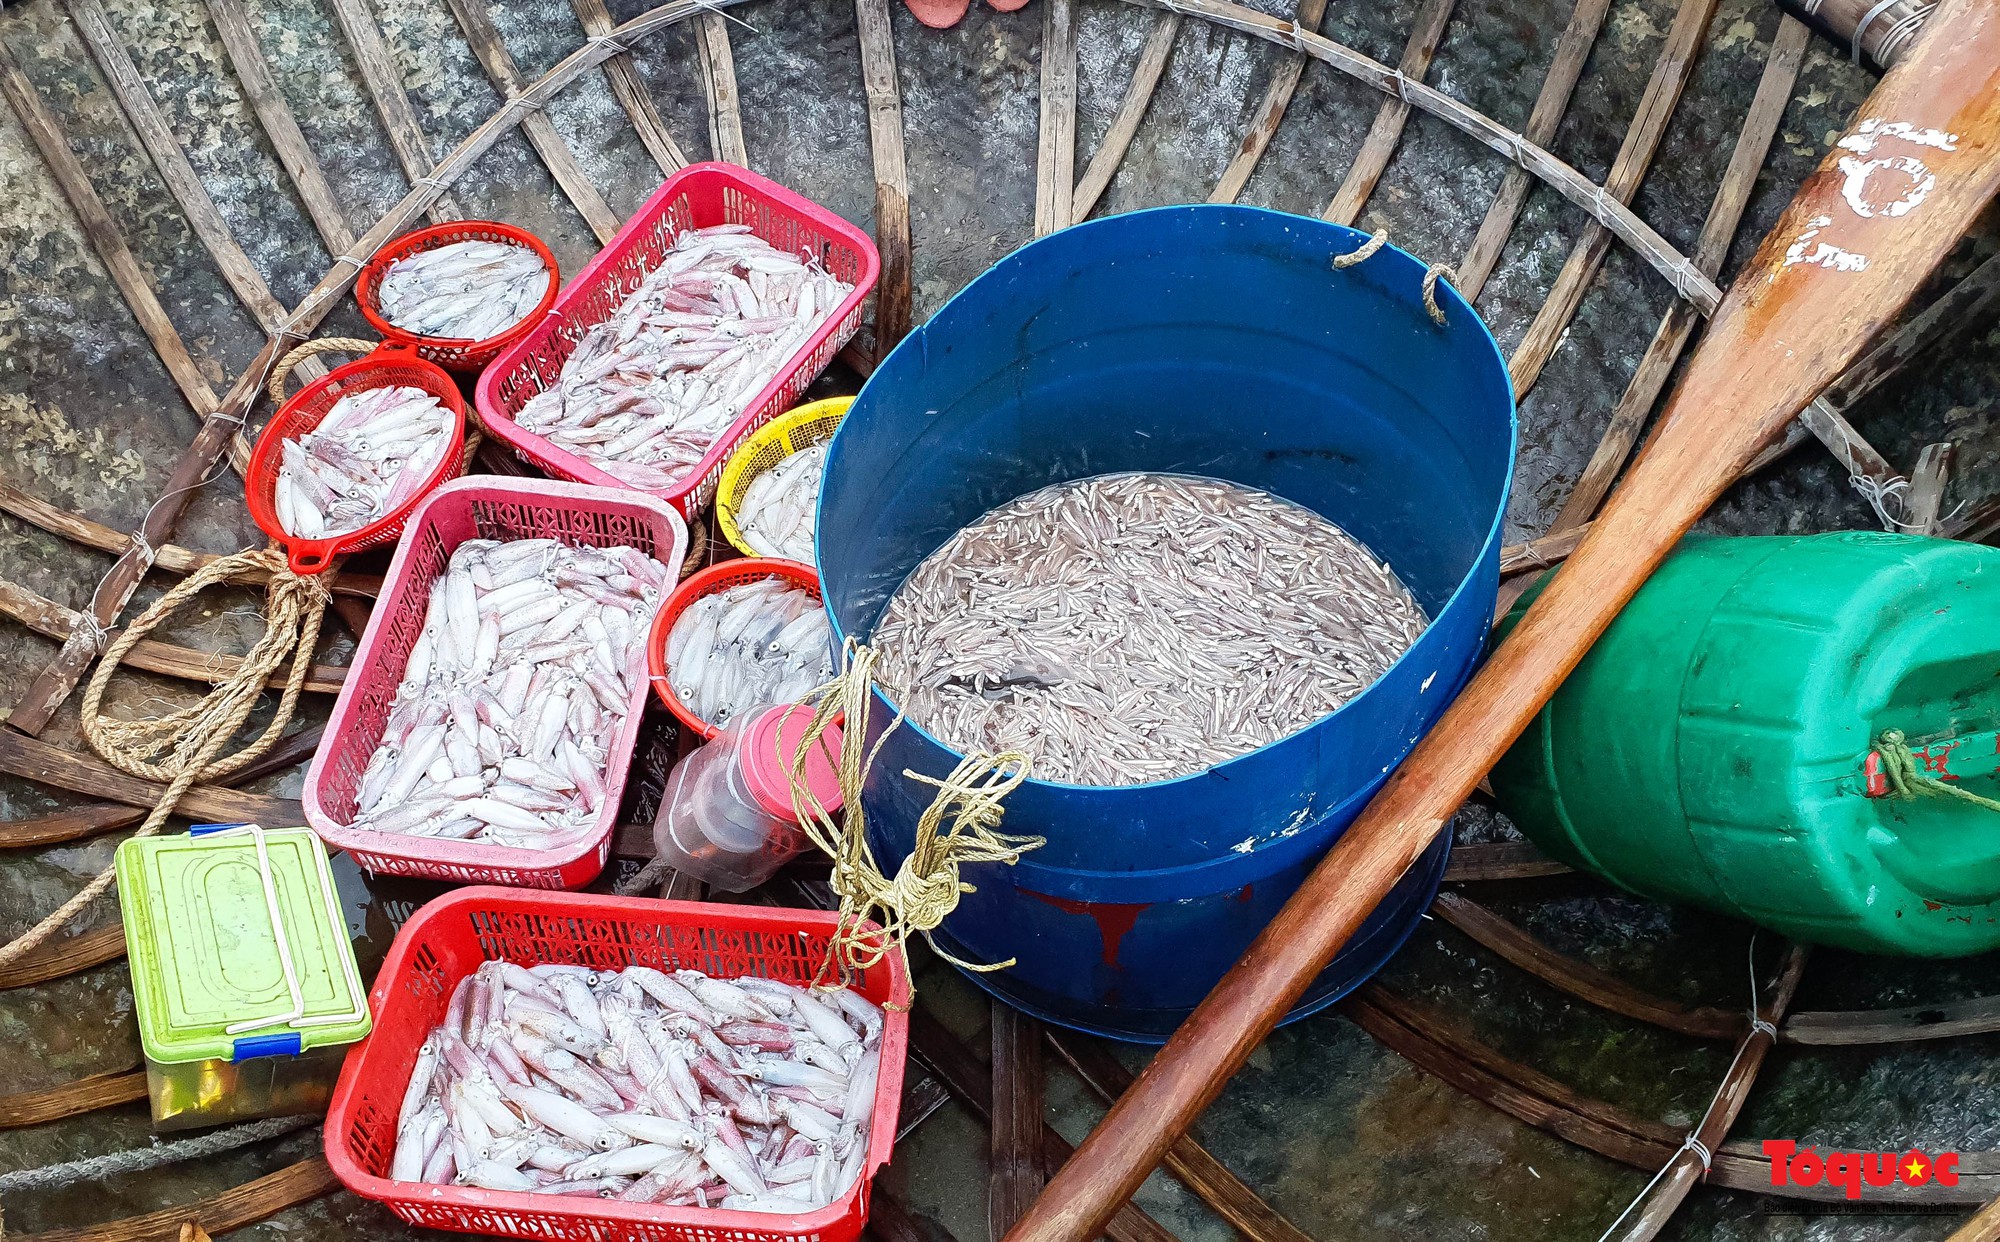 Ghé chợ hải sản tươi rói bên bờ biển Đà Nẵng lúc bình minh - Ảnh 4.